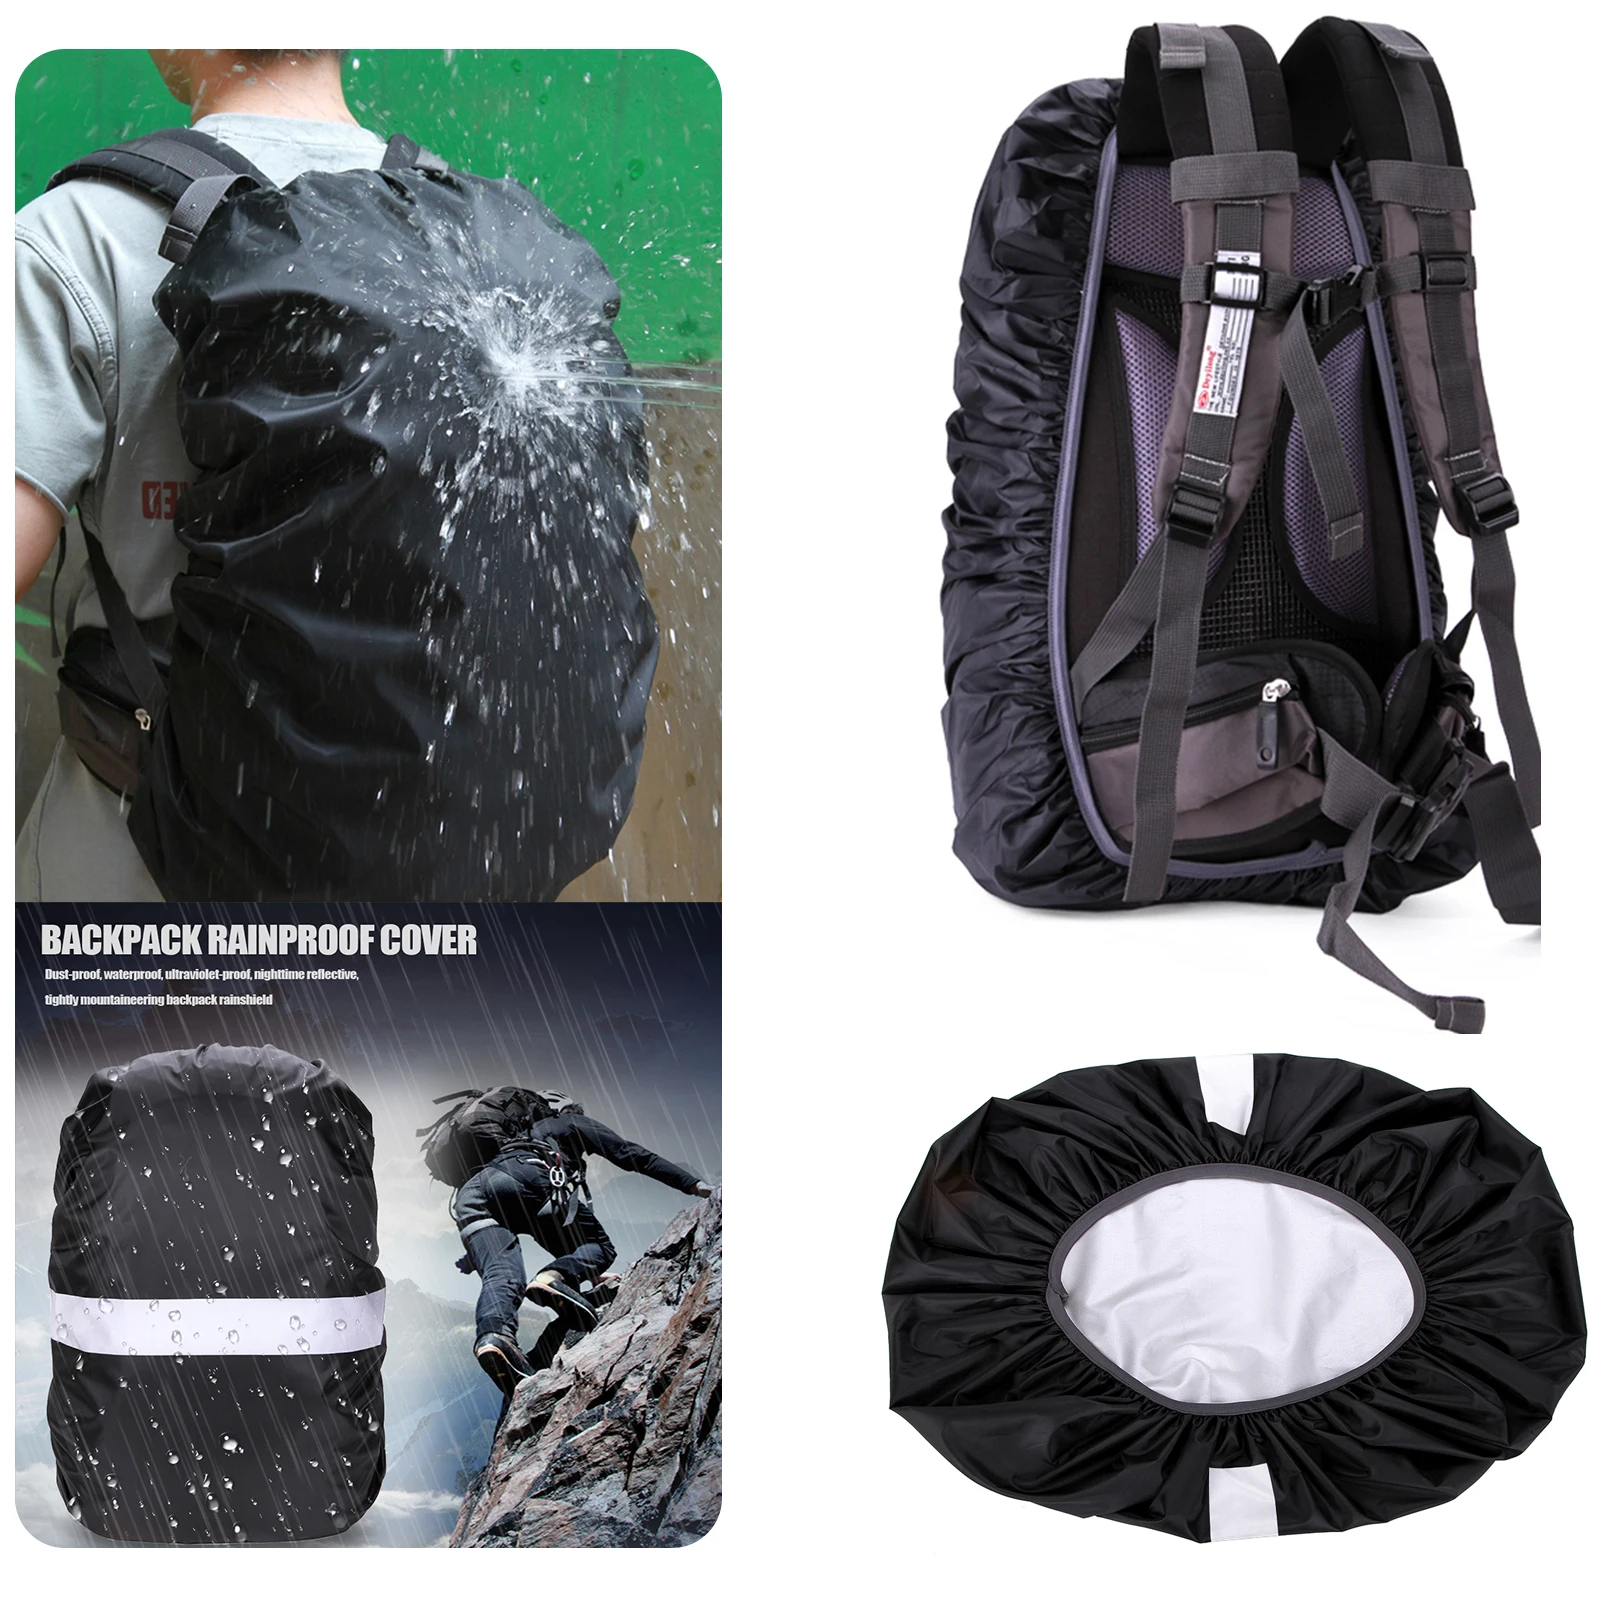 

Водонепроницаемый чехол для рюкзака пылезащитный чехол от дождя для рюкзака, непромокаемый чехол для улицы, кемпинга, пешего туризма, альпинизма, рюкзак, сумка, чехол